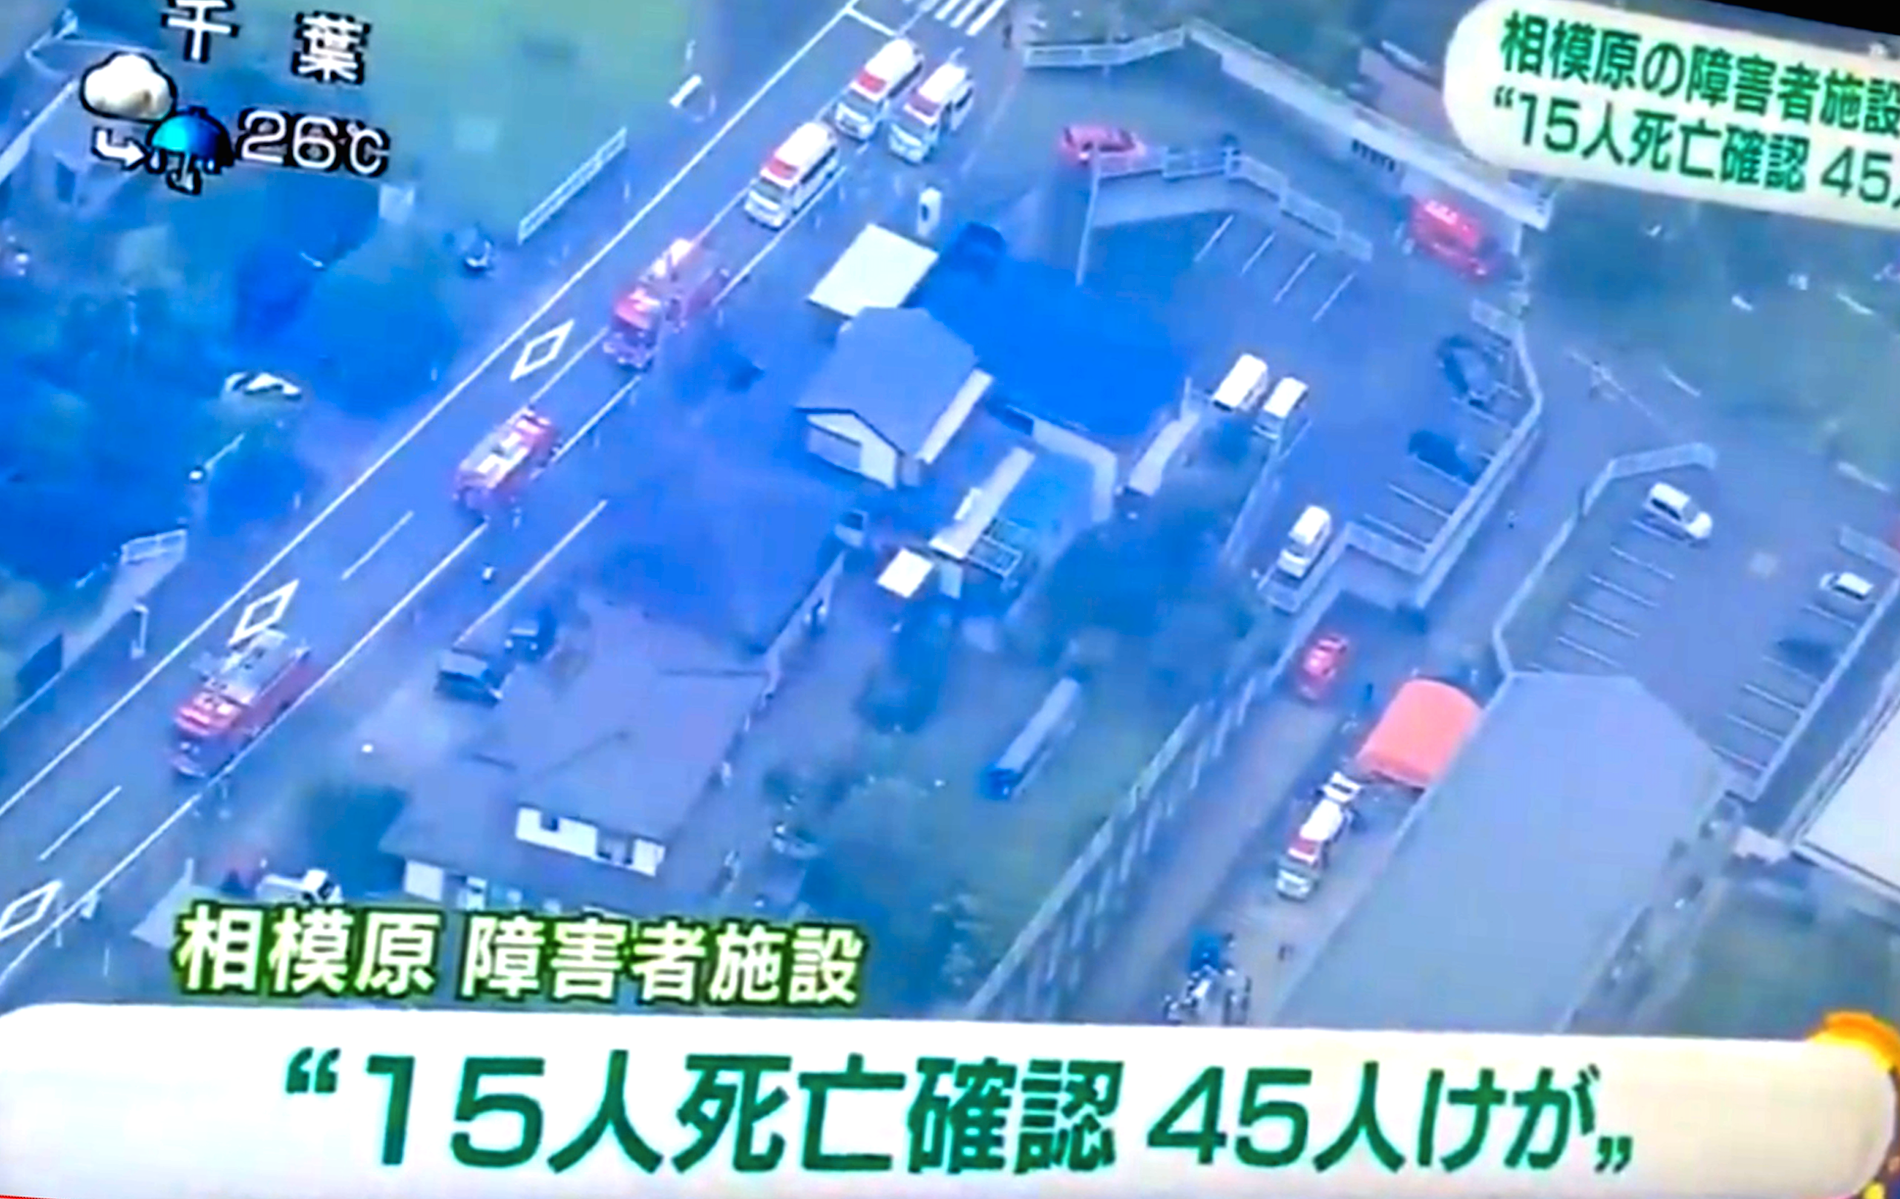 Minst 15 personer dog i samband med ett knivdrama på ett hem för funktionsnedsatta i Japan.